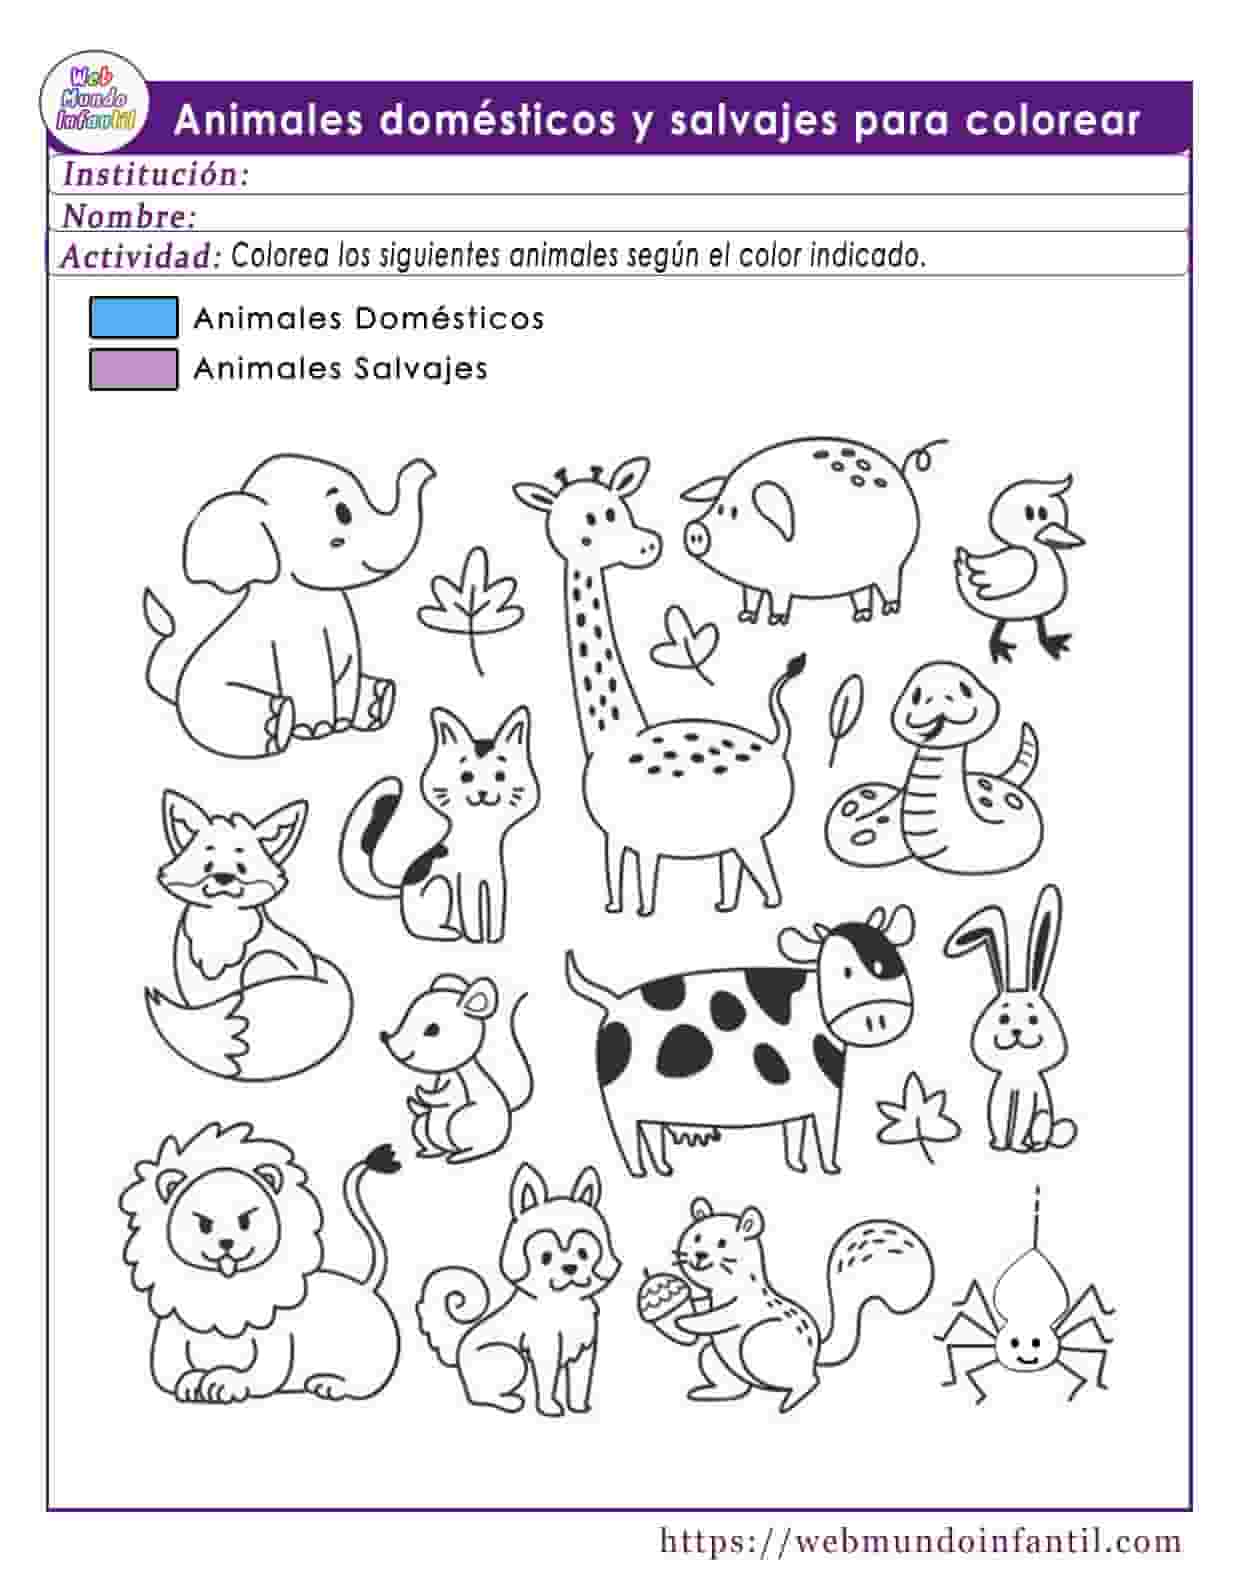 30 Fichas de dibujos de animales domésticos para colorear